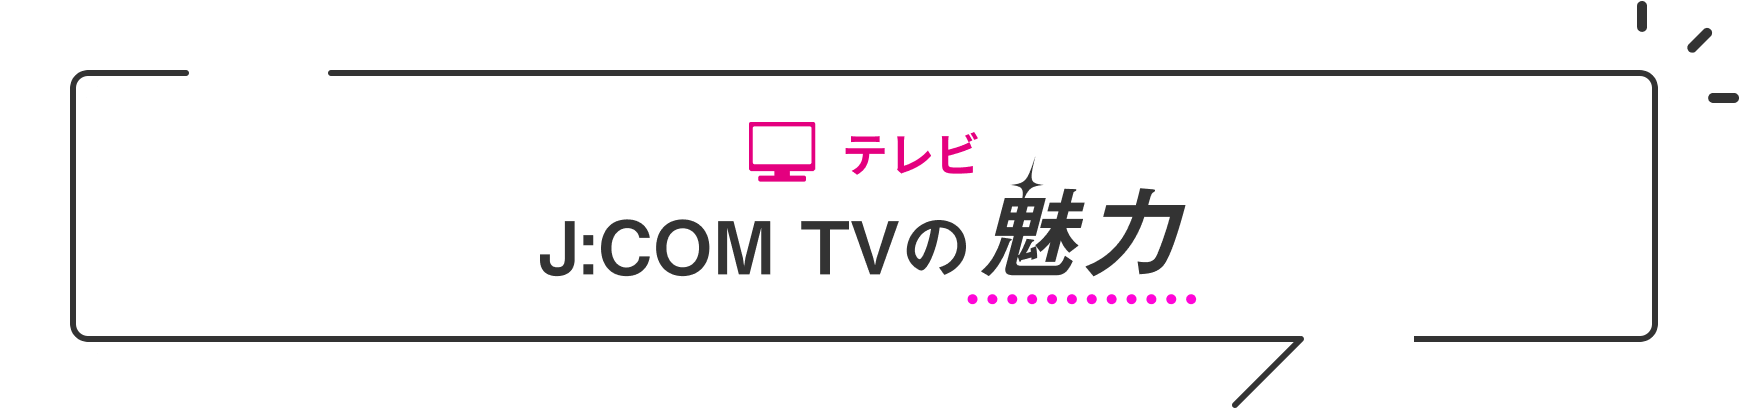 テレビ J:COM TVの魅力